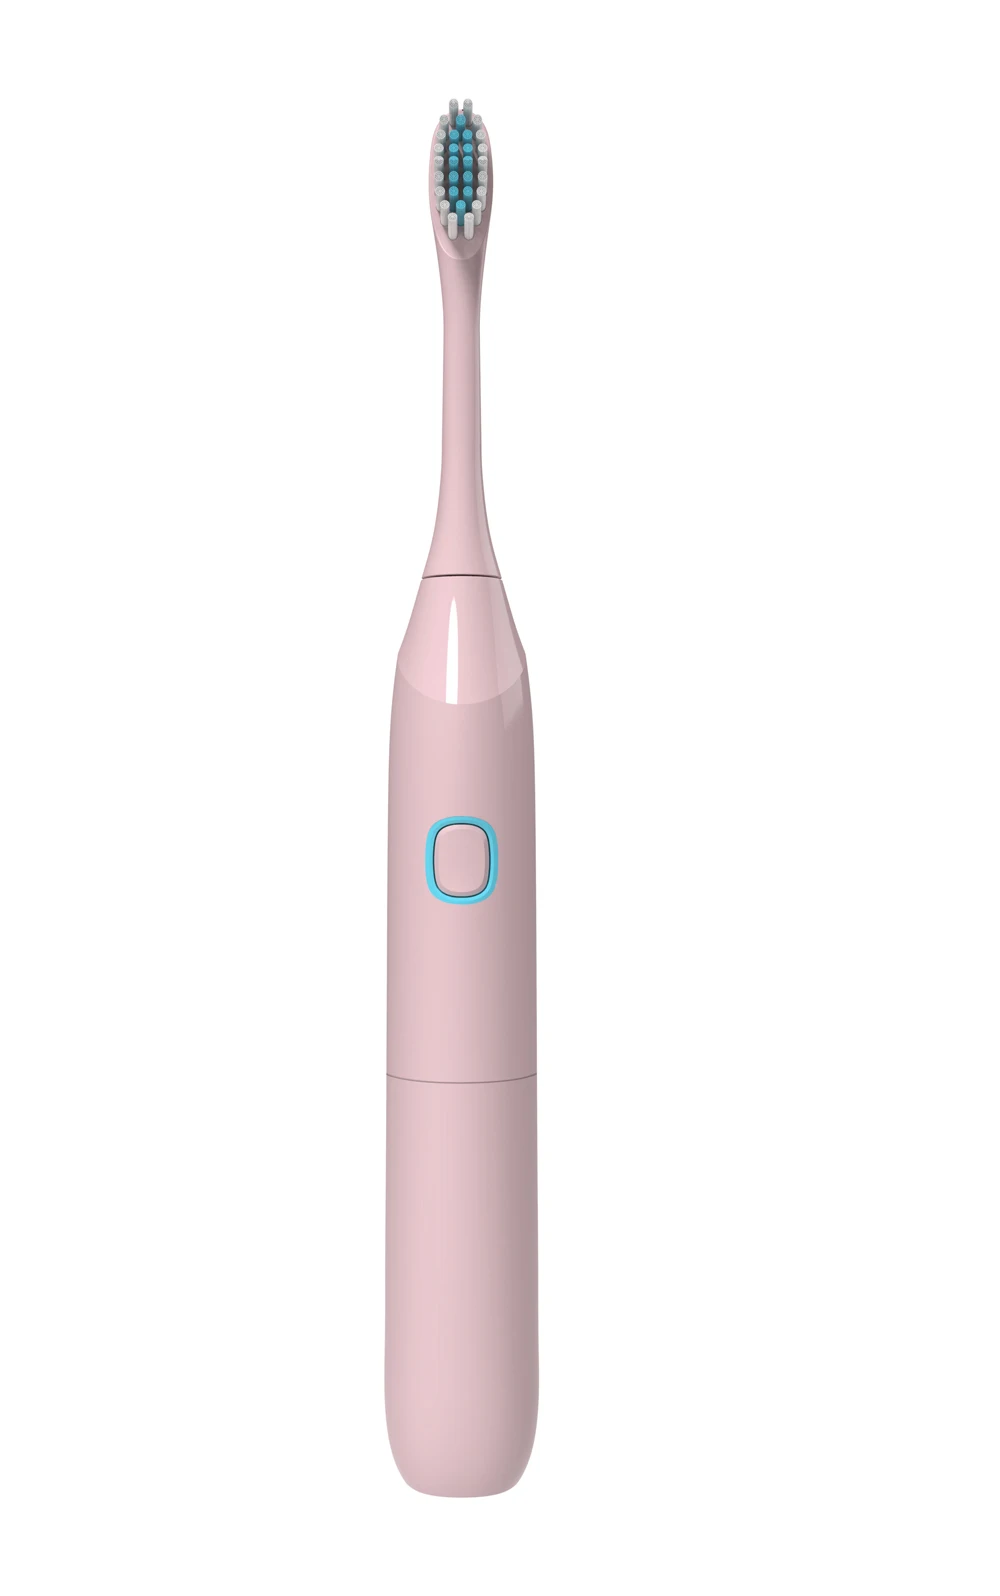 Новая электрическая зубная щетка IPX7 Водонепроницаемая Высококачественная мягкая щетка с низким уровнем шума Подходит для детей старше 3 лет и взрослых